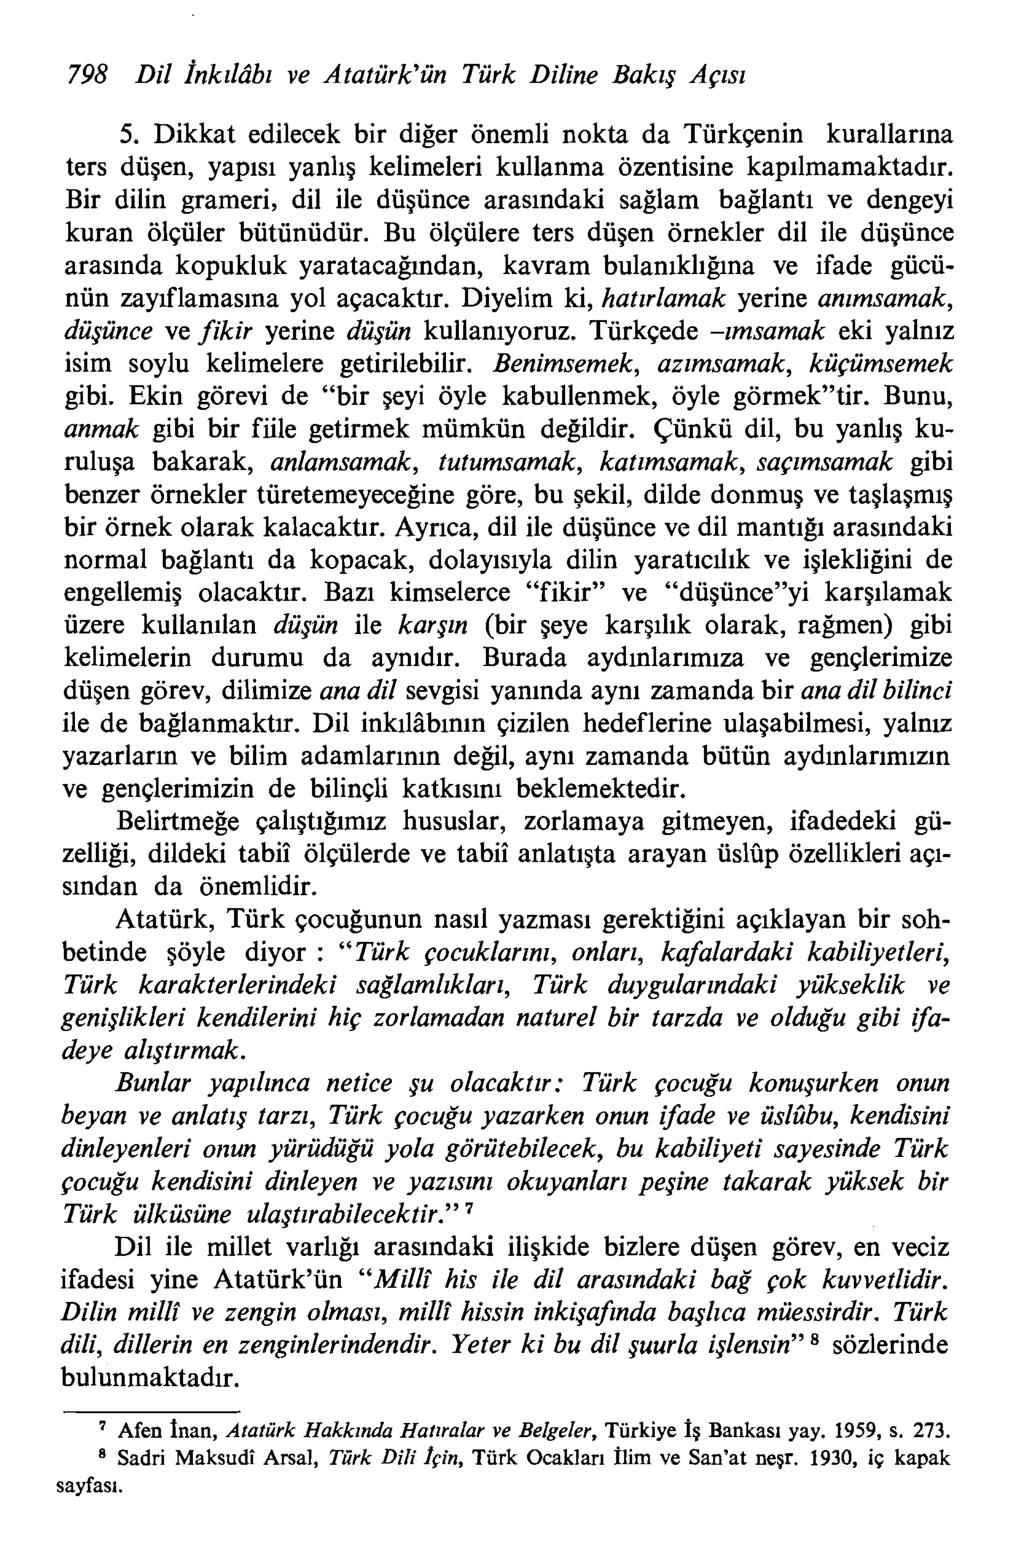 798 Dil inkzldbz ve Ataturk'un Turk Diline Bakzg Apsz 5. Dikkat edilecek bir diger onemli nokta da Turk~nin kurallarina ters dugen, yapisi yanlig kelimeleri kullanma ozentisine kapilmamaktadlr.